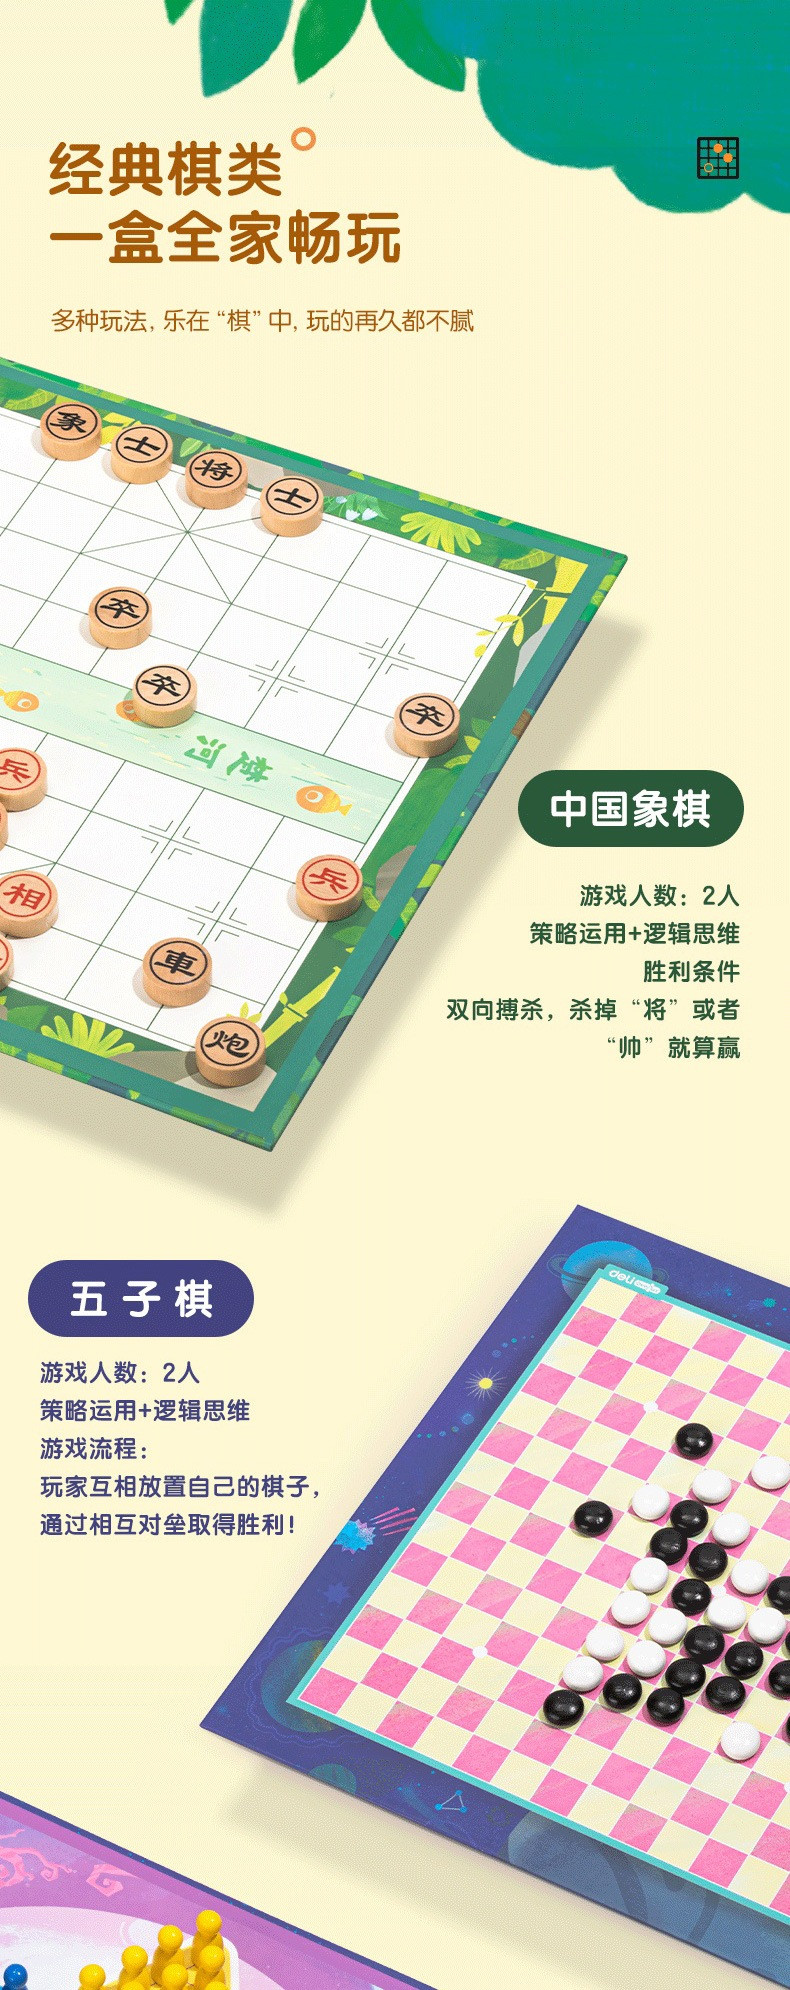 得力/deli 18合一围棋中国象棋五子棋跳棋男女孩玩具多功能桌游亲子